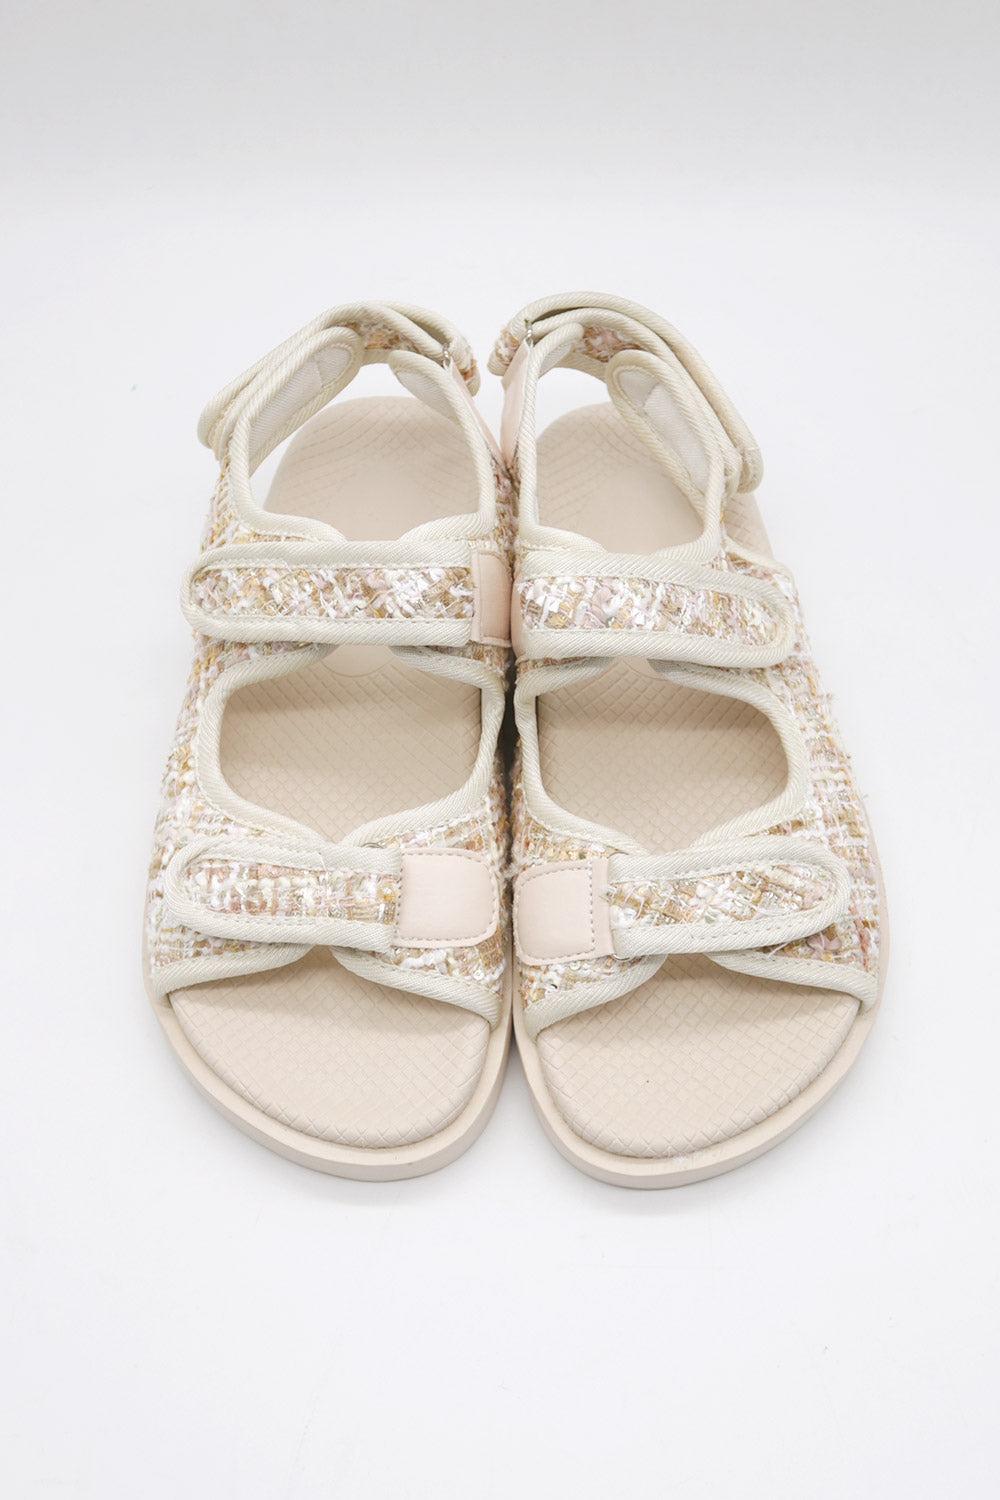 storets.com Elea Tweed Sandals